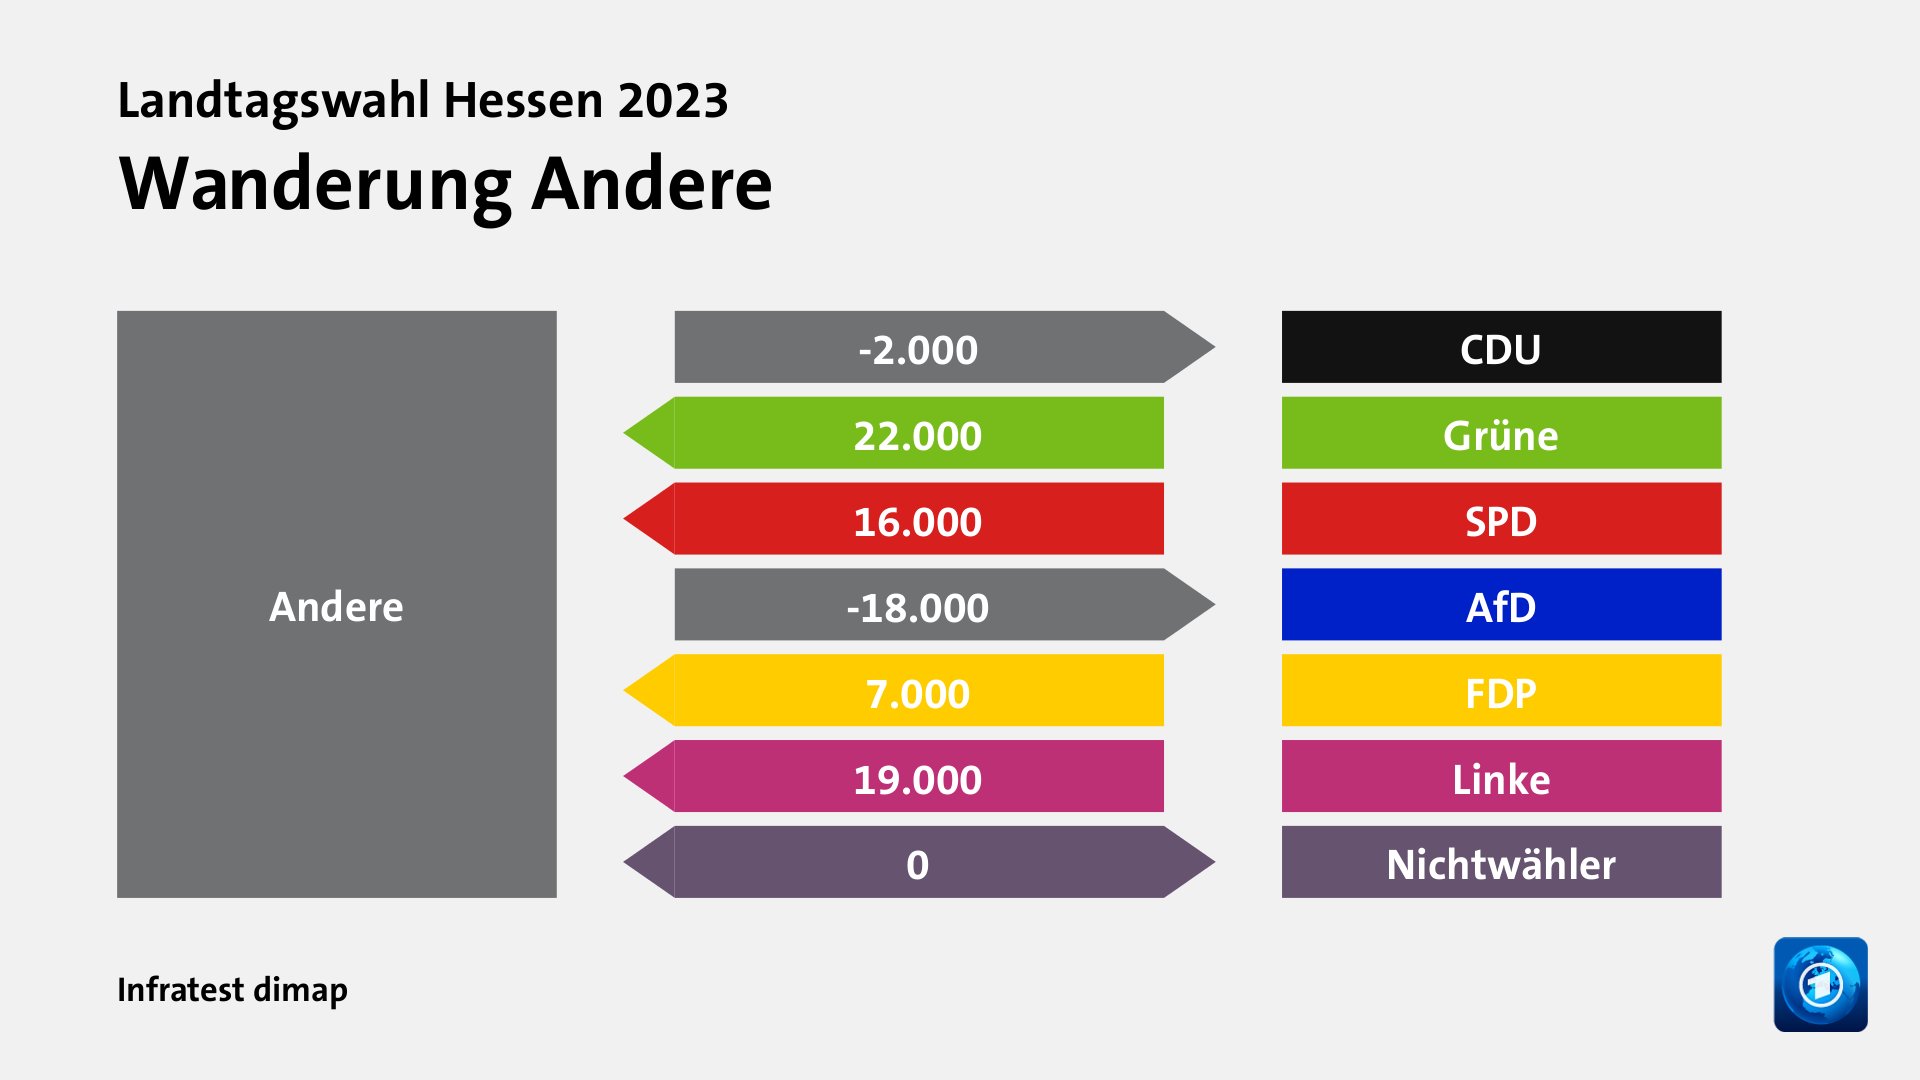 Wanderung Anderezu CDU 2.000 Wähler, von Grüne 22.000 Wähler, von SPD 16.000 Wähler, zu AfD 18.000 Wähler, von FDP 7.000 Wähler, von Linke 19.000 Wähler, zu Nichtwähler 0 Wähler, Quelle: Infratest dimap